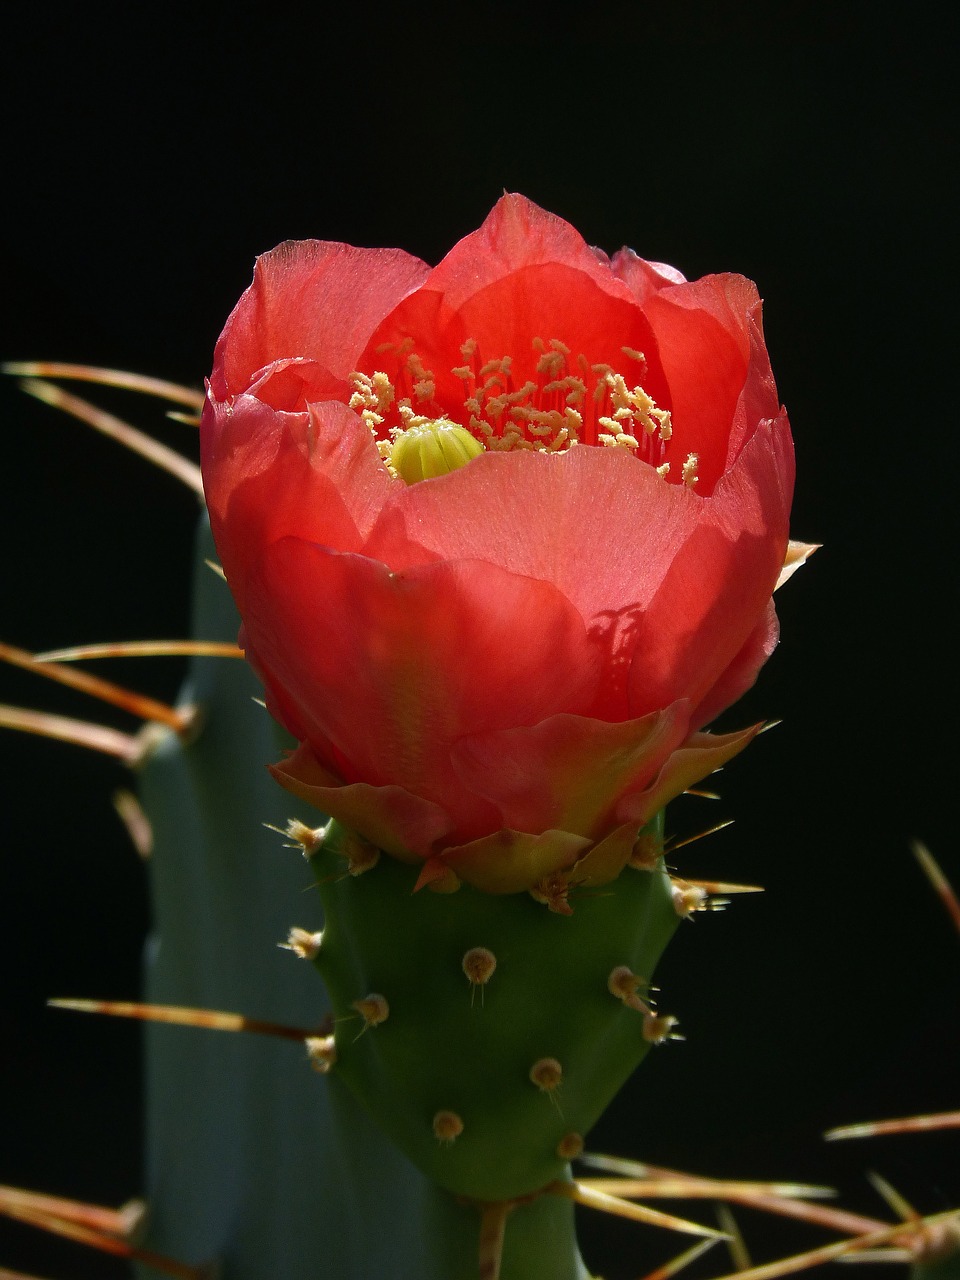 flower cactus skewers free photo